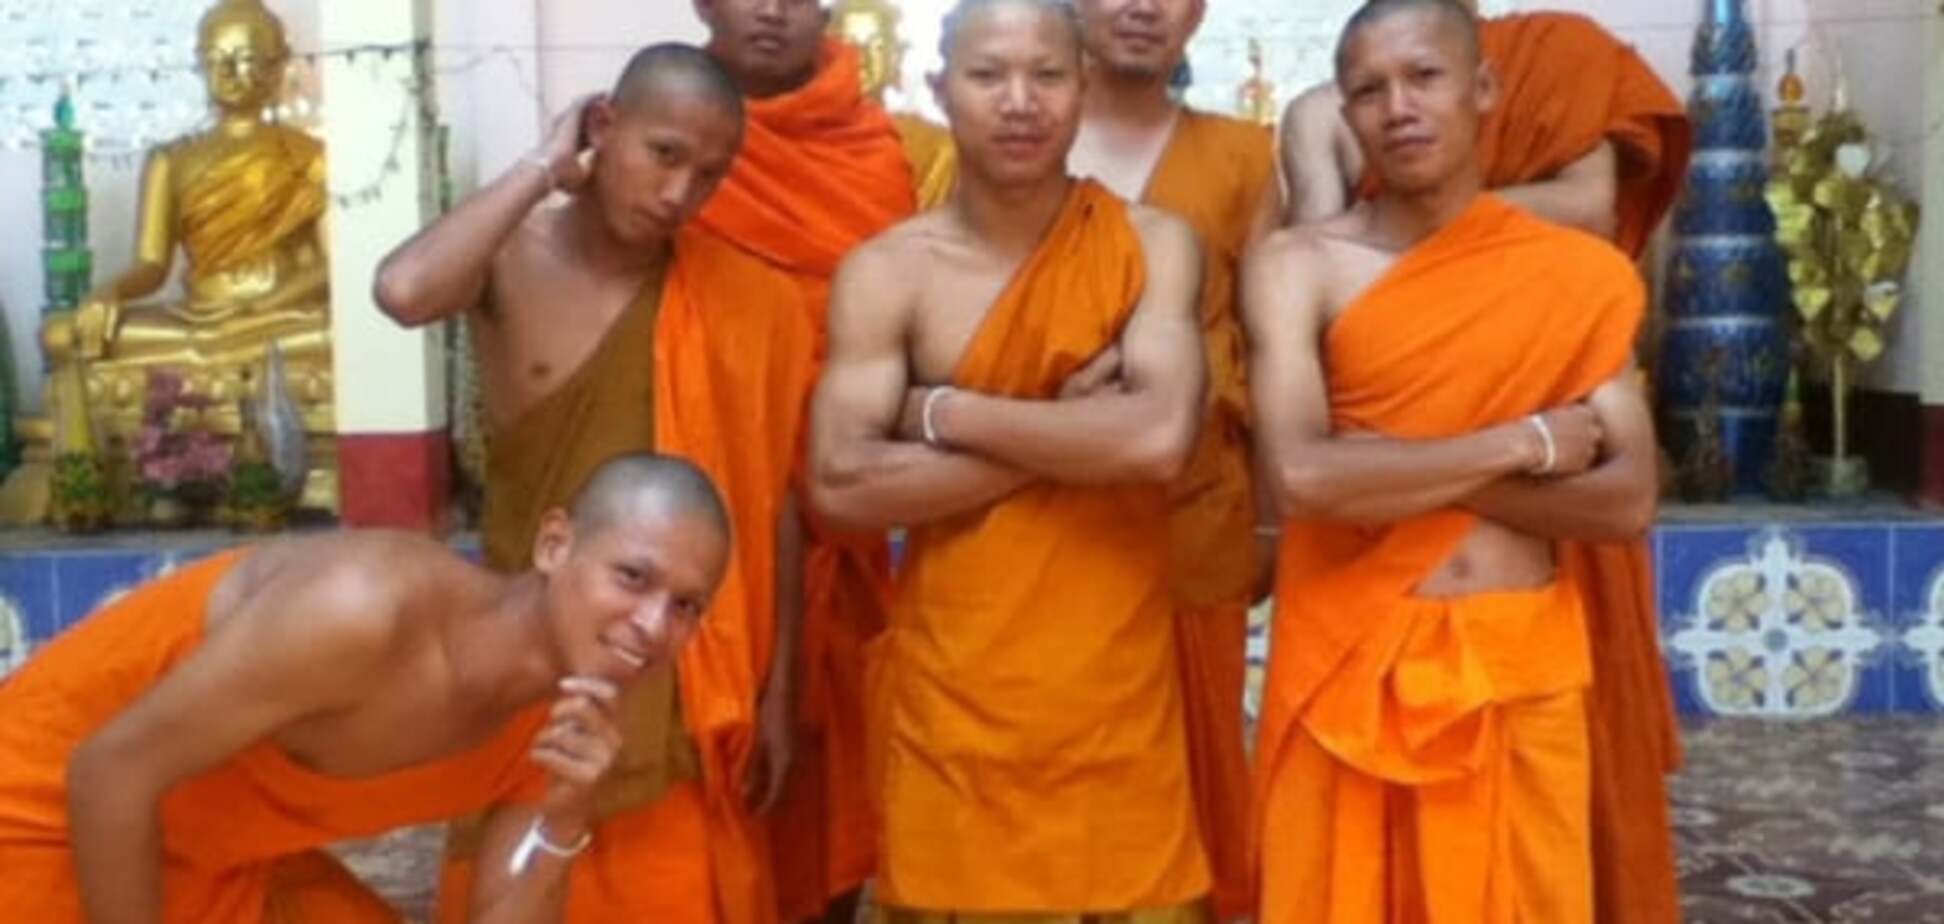 С потерянного iPod в сеть выложили личные фото буддийских монахов